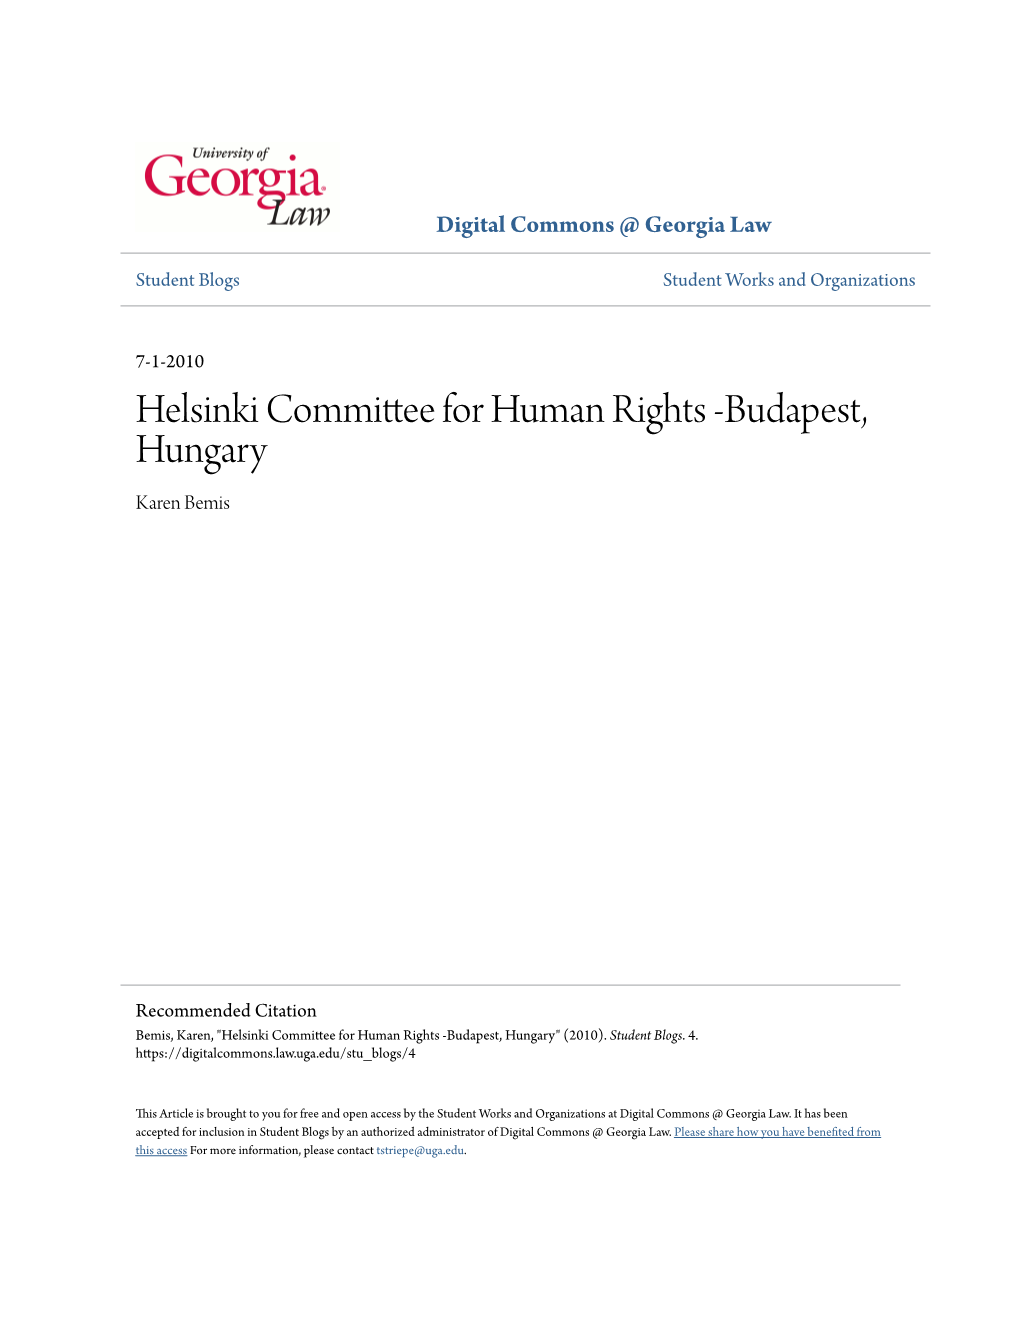 Helsinki Committee for Human Rights -Budapest, Hungary Karen Bemis